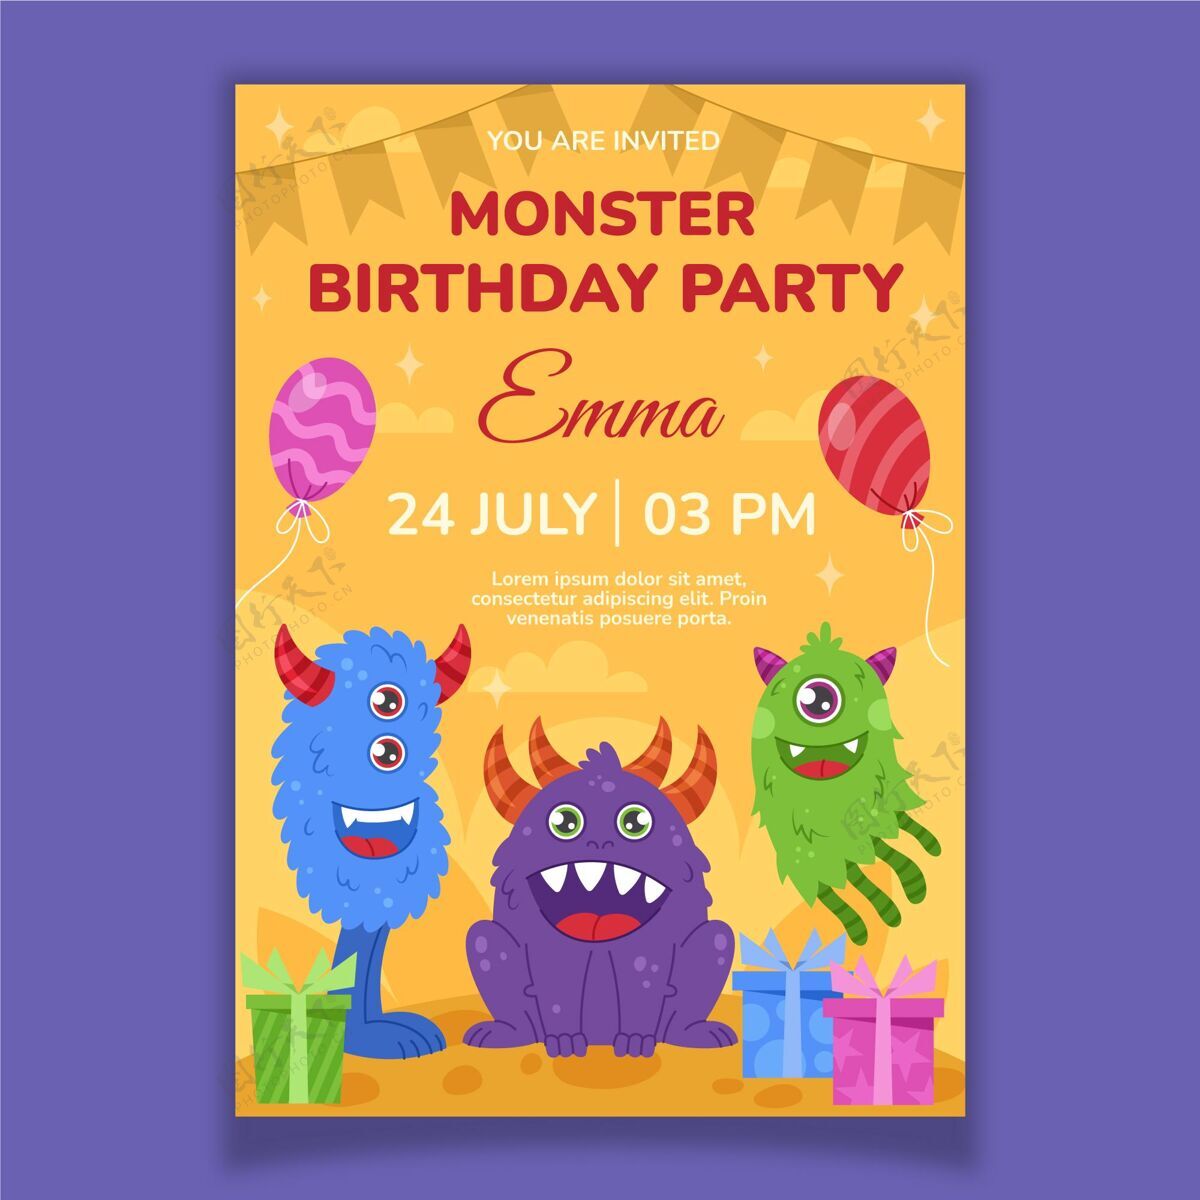 小孩生日派对怪物生日请柬模板请柬模板手绘生日模板